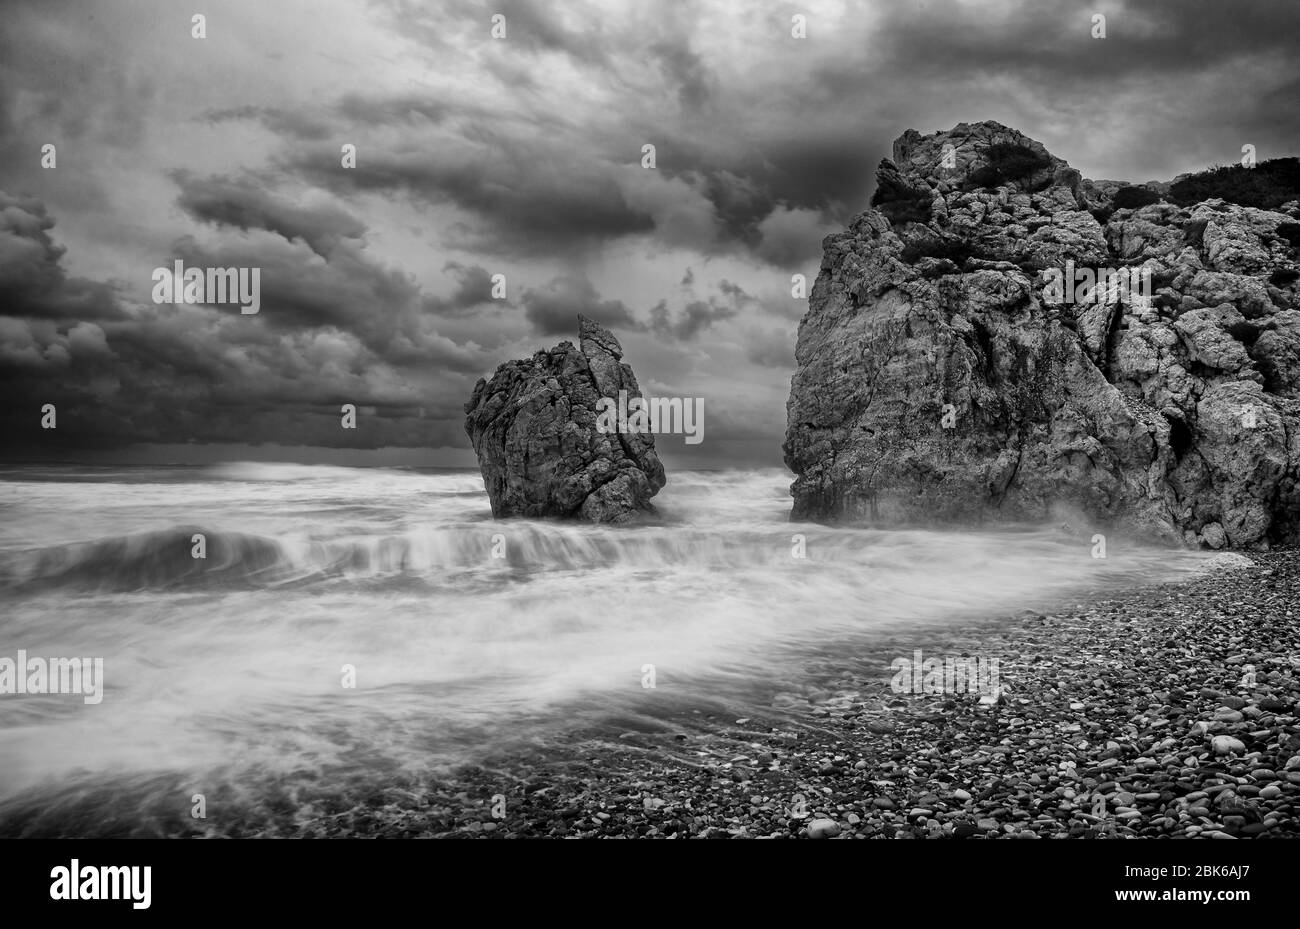 Stagcape con onde ventose durante il tempo della tempesta nella zona costiera rocciosa della Rocca di Afrodite nella zona di Paphos, Cipro. Fotografia a esposizione prolungata Foto Stock